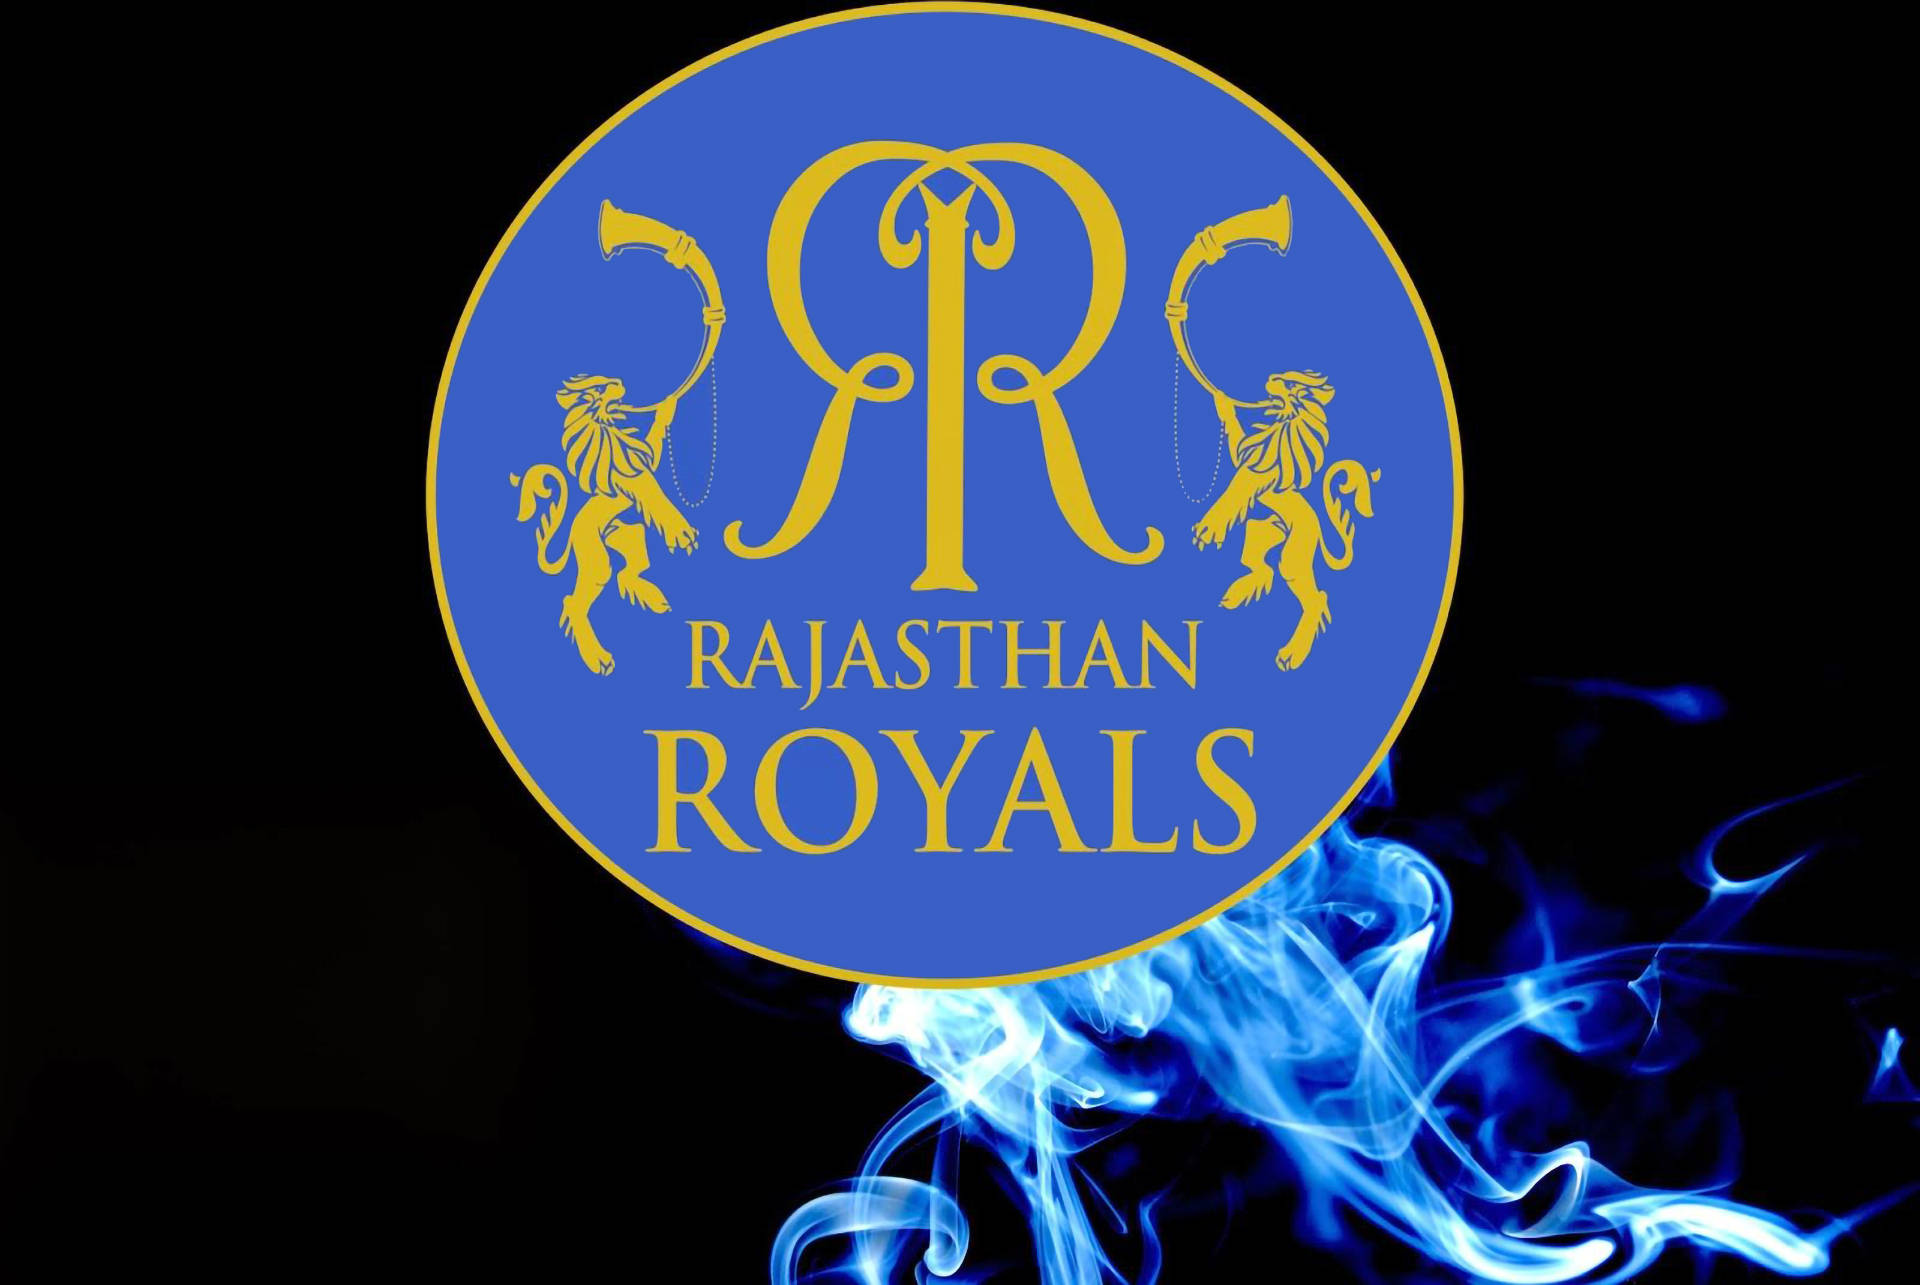 Rajasthan Royals Blue Smoke Background